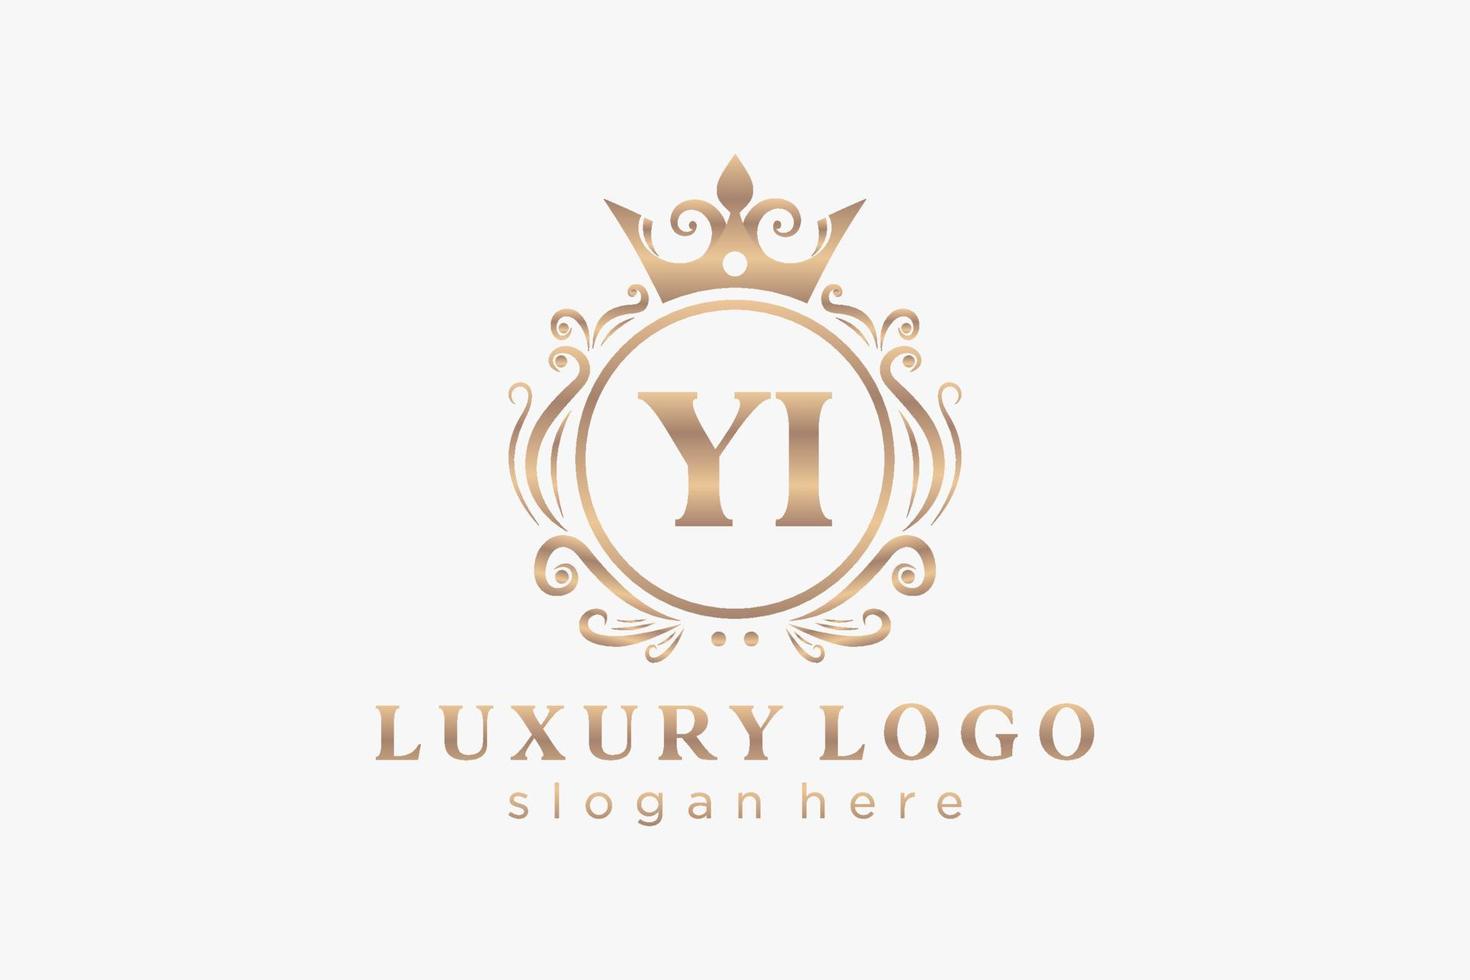 modelo de logotipo de luxo real da letra inicial yi em arte vetorial para restaurante, realeza, boutique, café, hotel, heráldica, joias, moda e outras ilustrações vetoriais. vetor